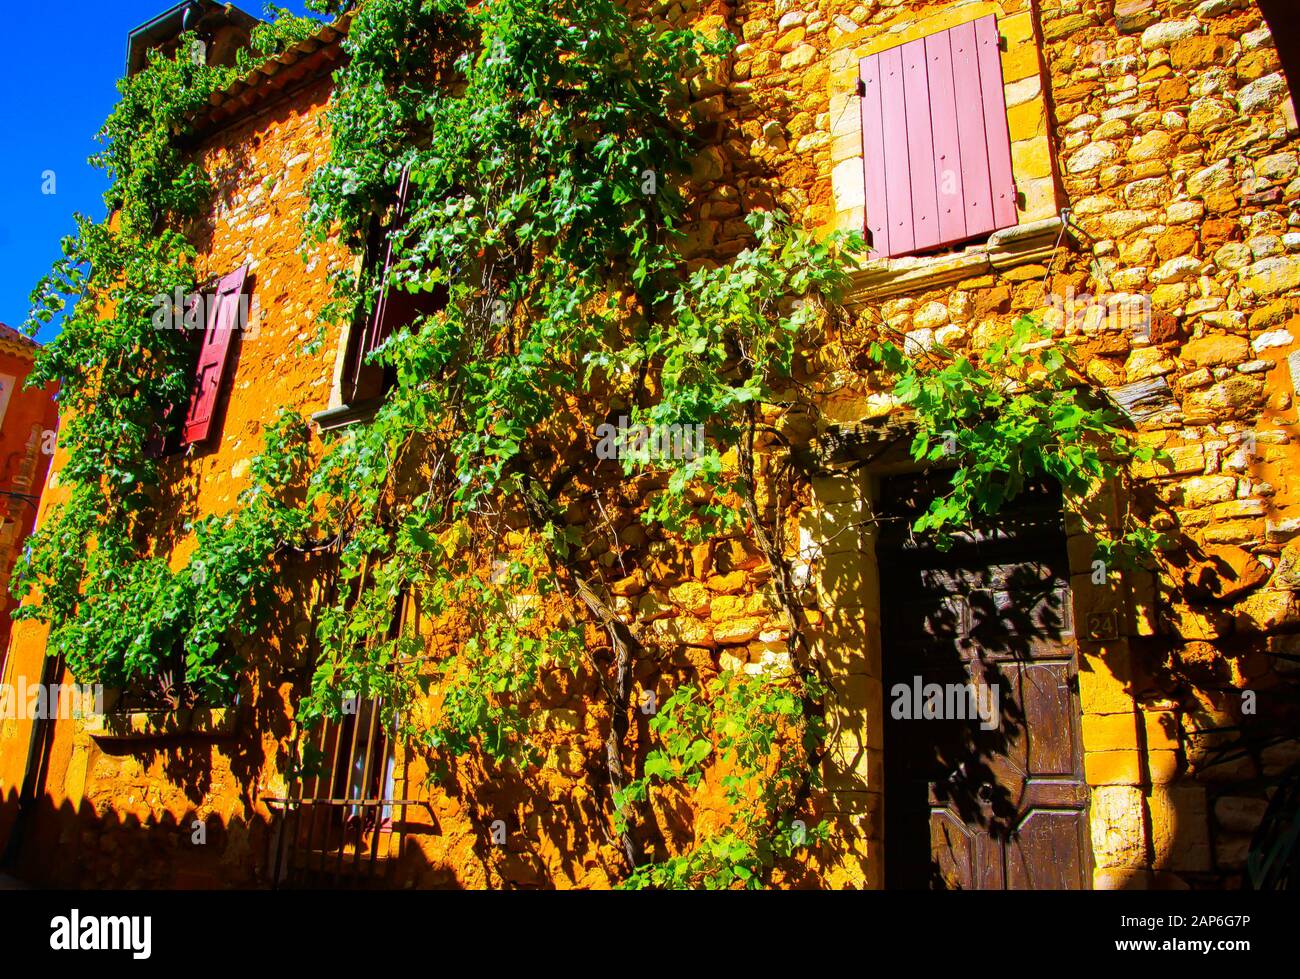 Vue sur la façade de la maison française en pierre naturelle méditerranéenne avec volets roses, porte en bois et plante de vigne grimpant mur - Roussillon en Proven Banque D'Images